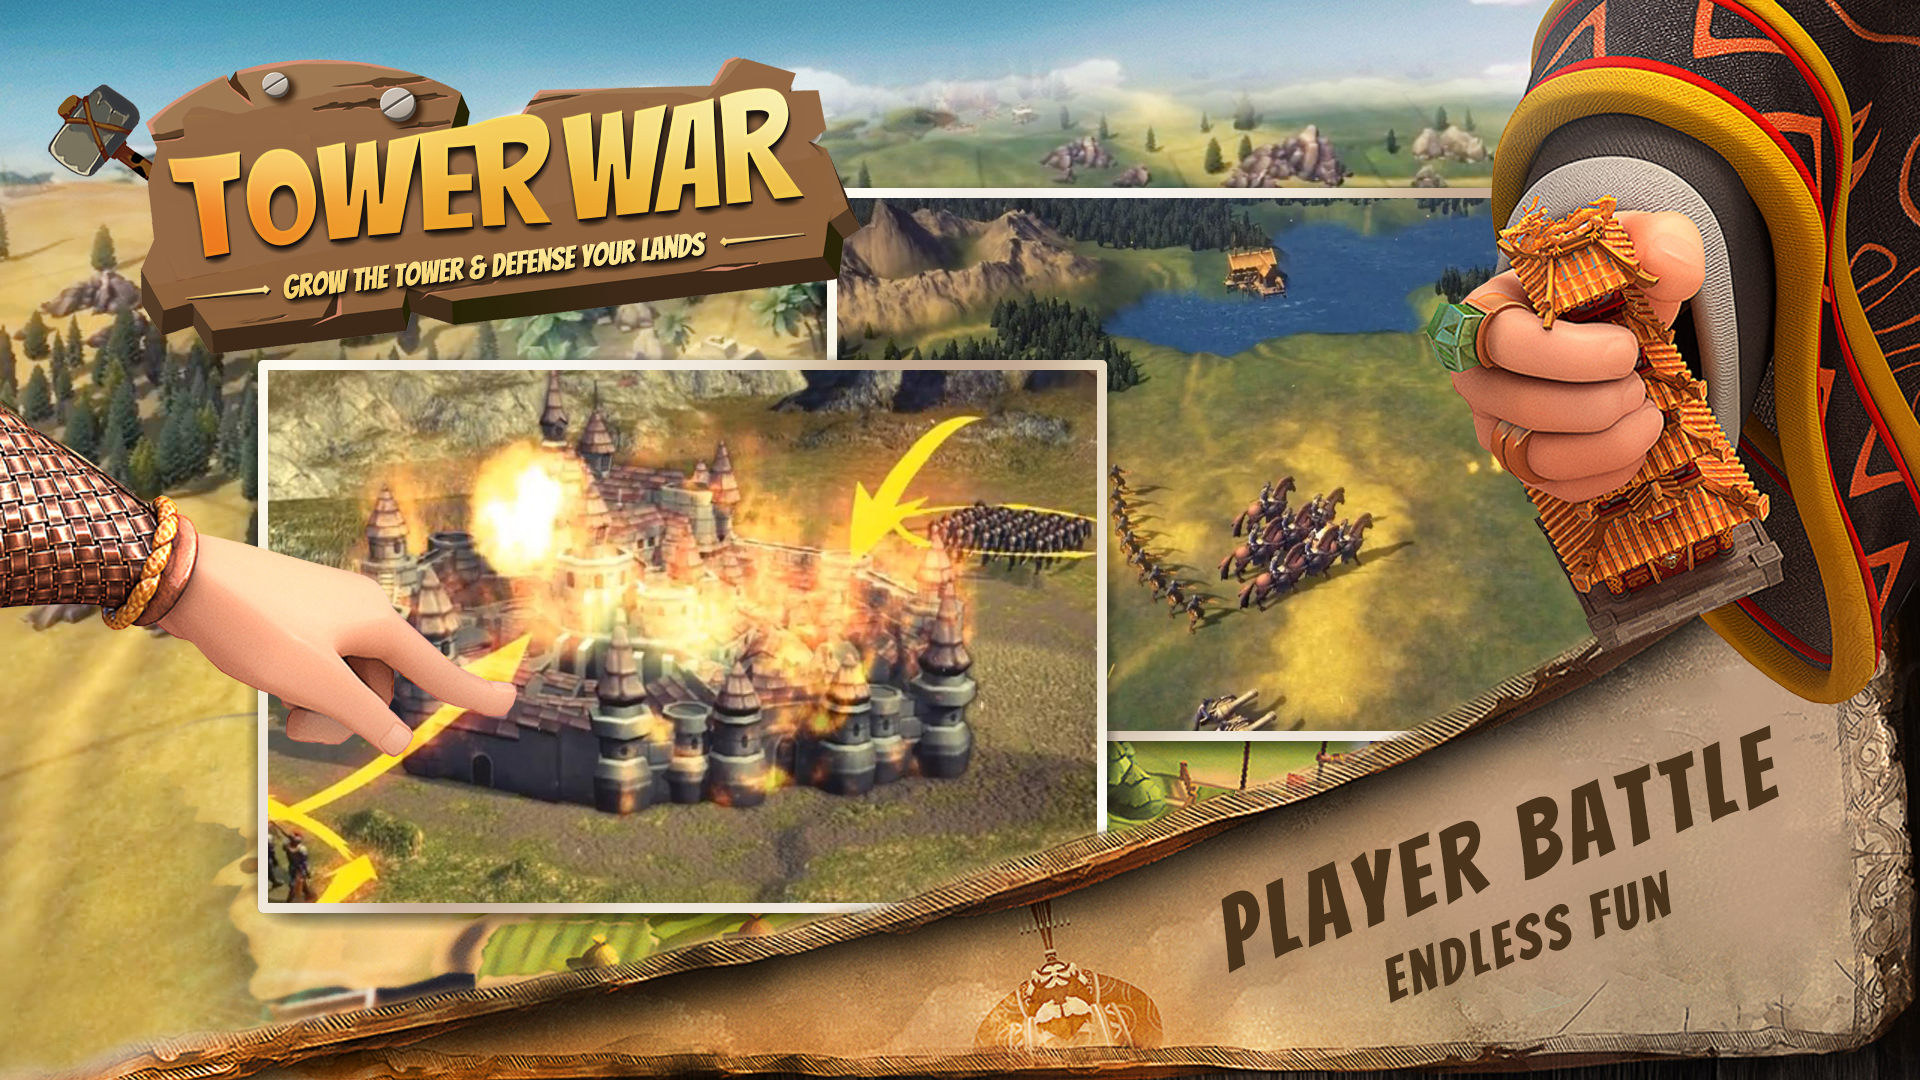 Screenshot 1 of Tower War - Aumente a torre e defenda suas terras 1.0